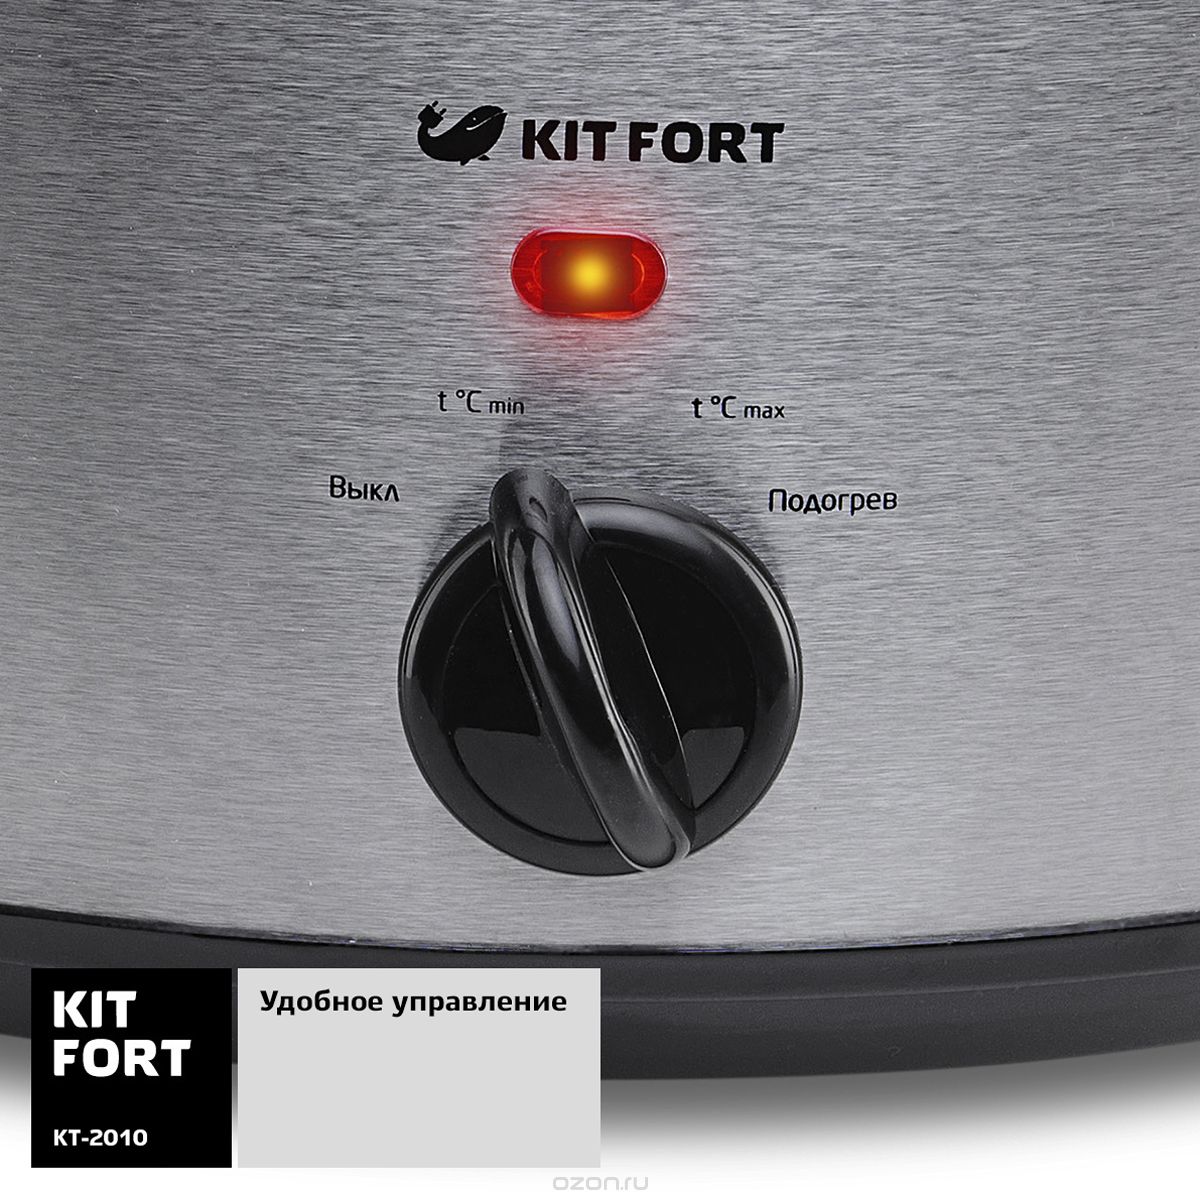 Kitfort -2010, Gray Metallic 